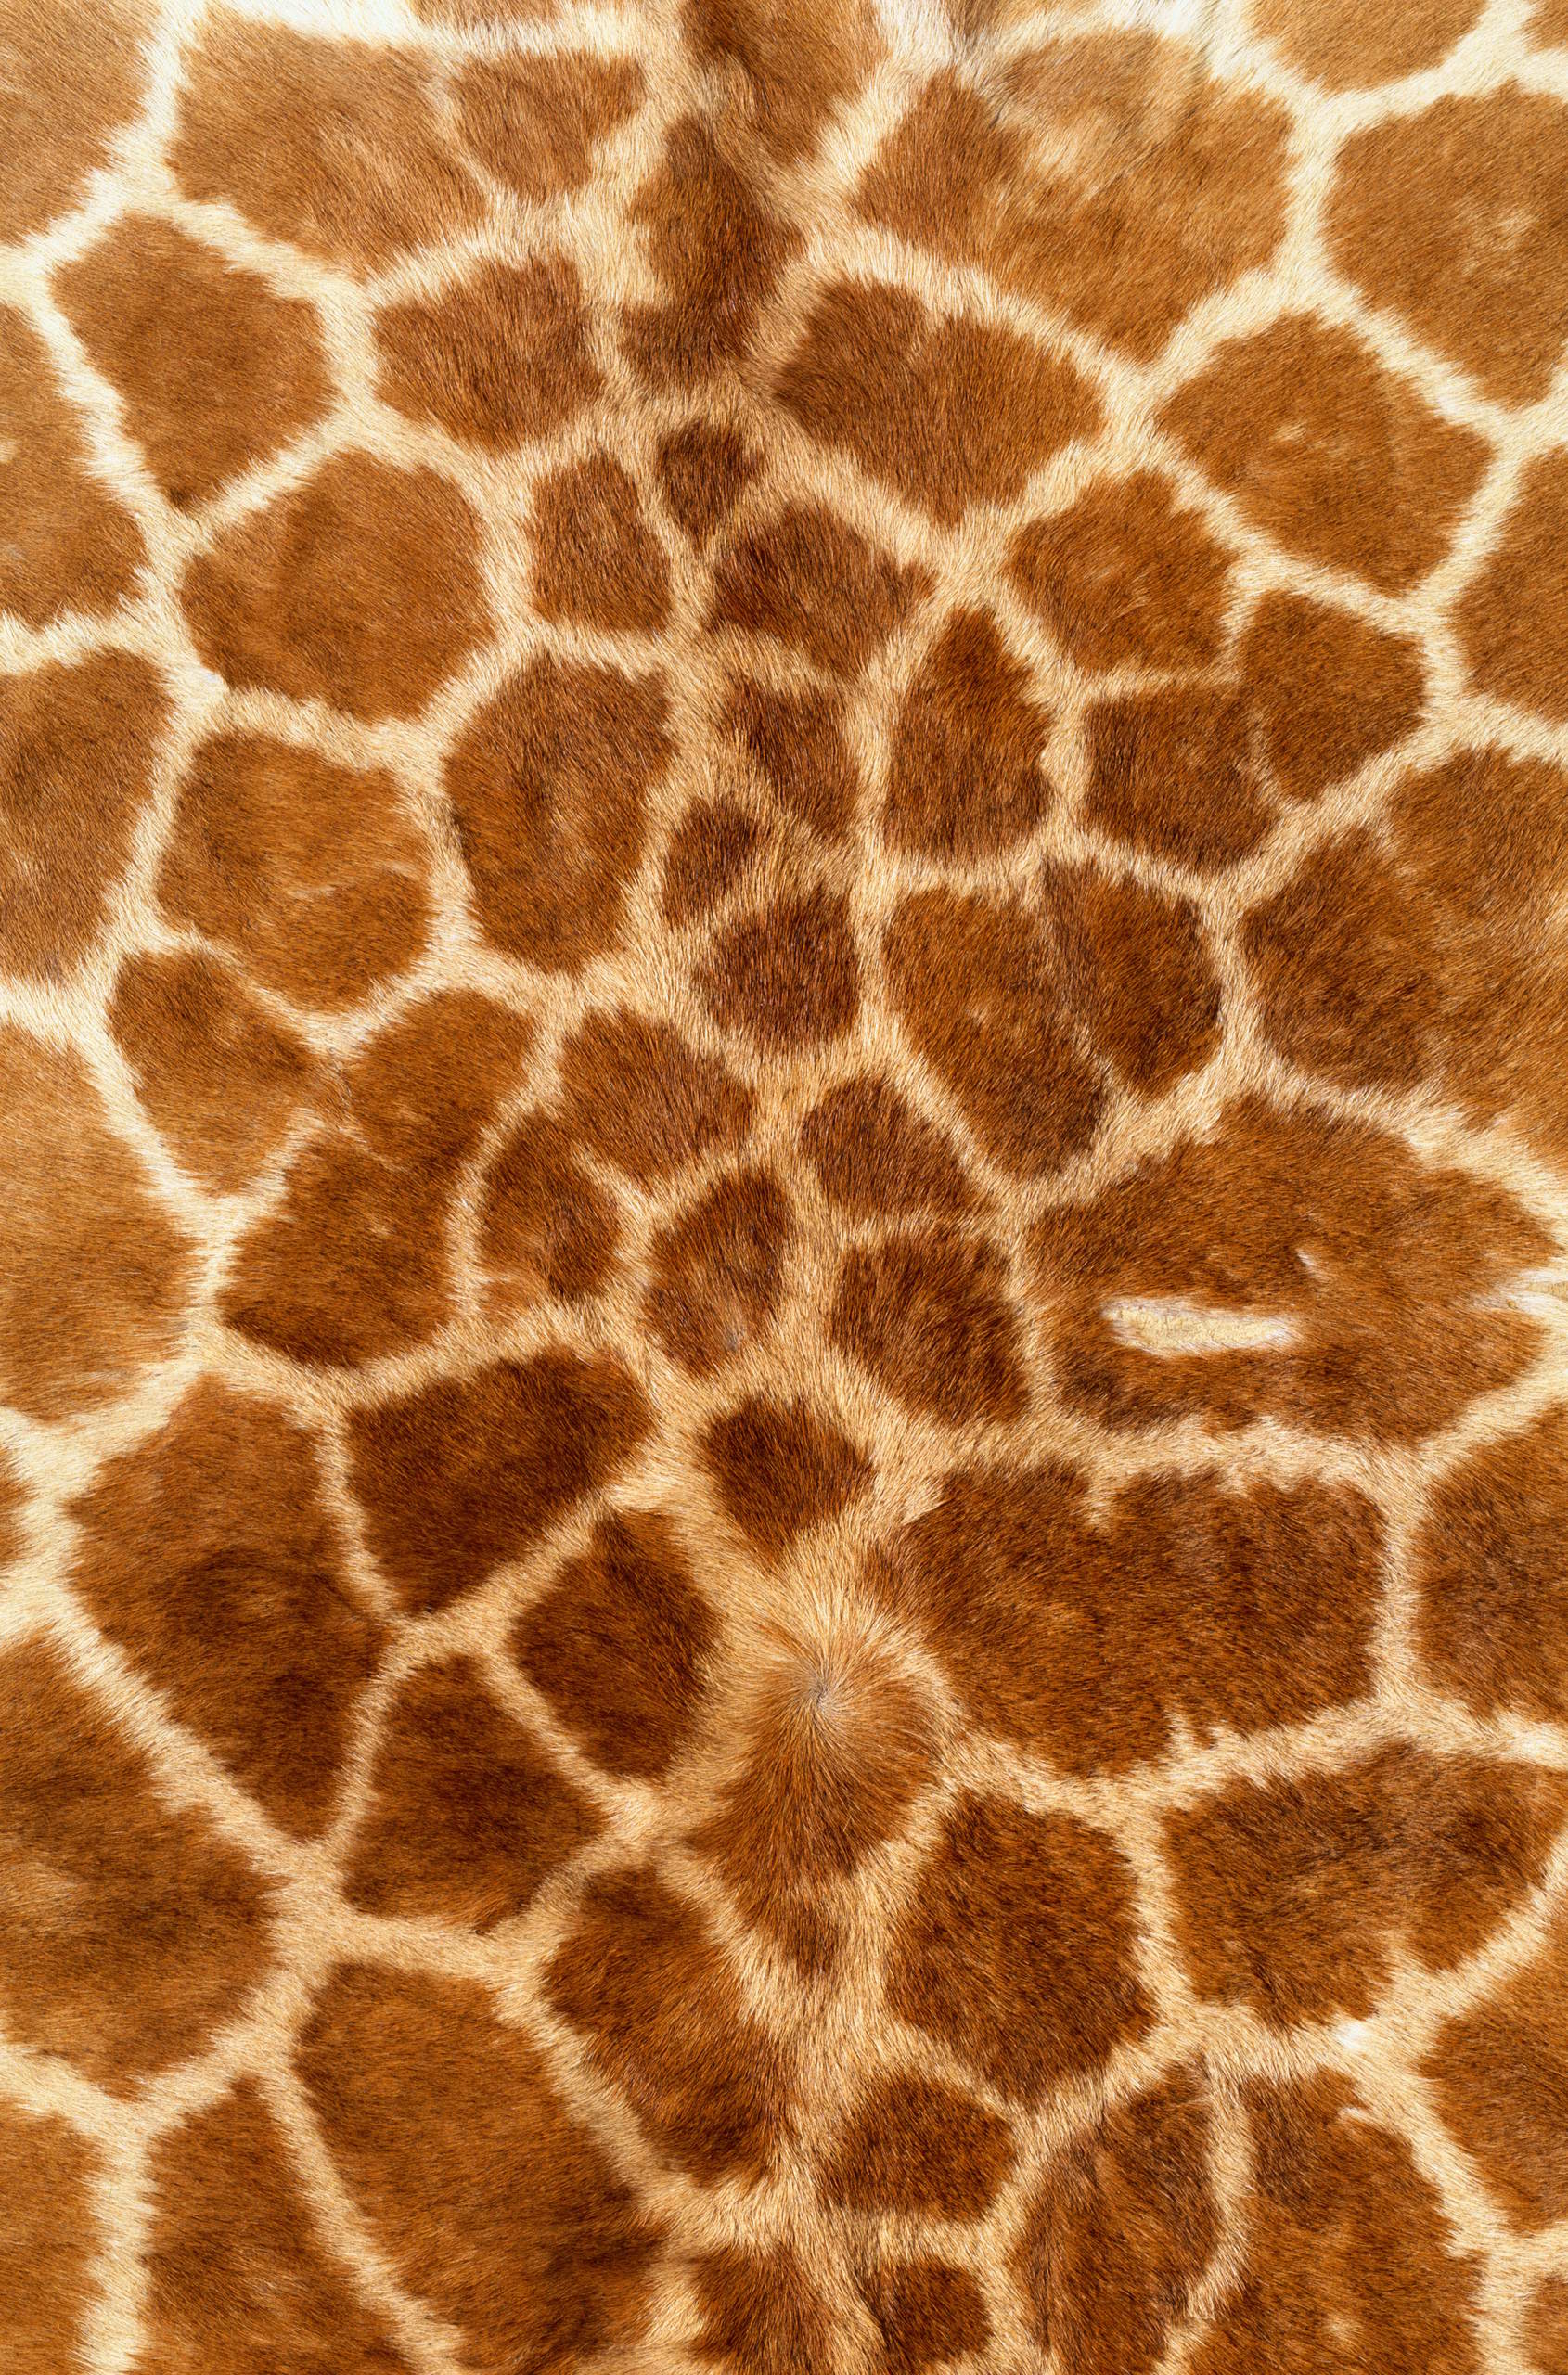 skin giraffe, texture fur, fur texture background, background